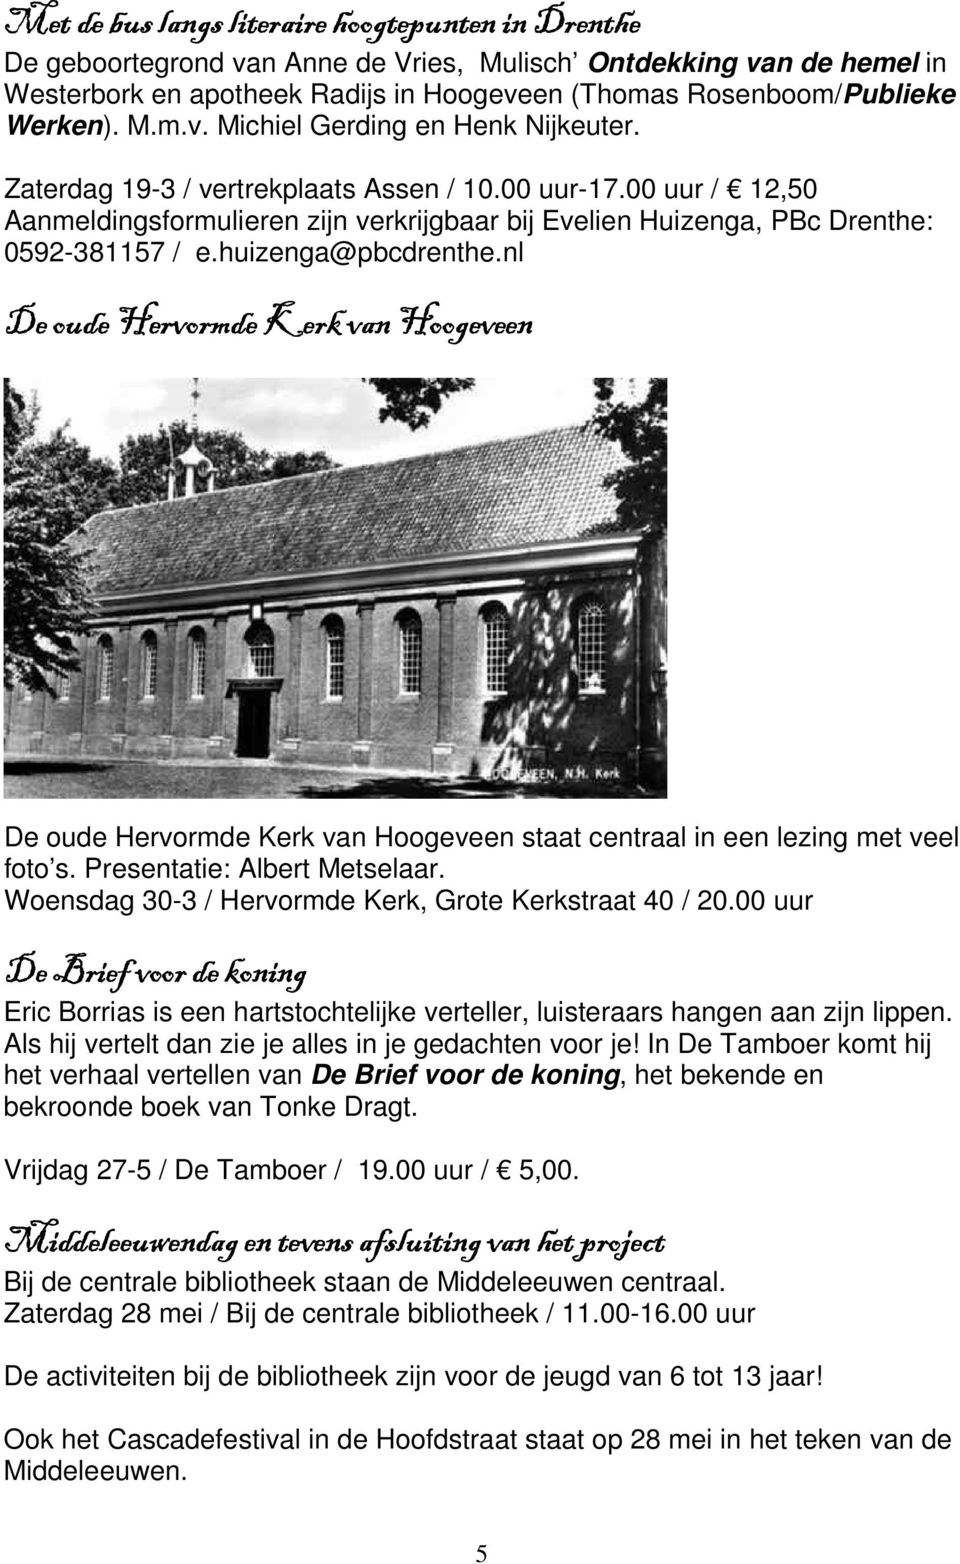 huizenga@pbcdrenthe.nl De oude Hervormde Kerk van Hoogeveen De oude Hervormde Kerk van Hoogeveen staat centraal in een lezing met veel foto s. Presentatie: Albert Metselaar.